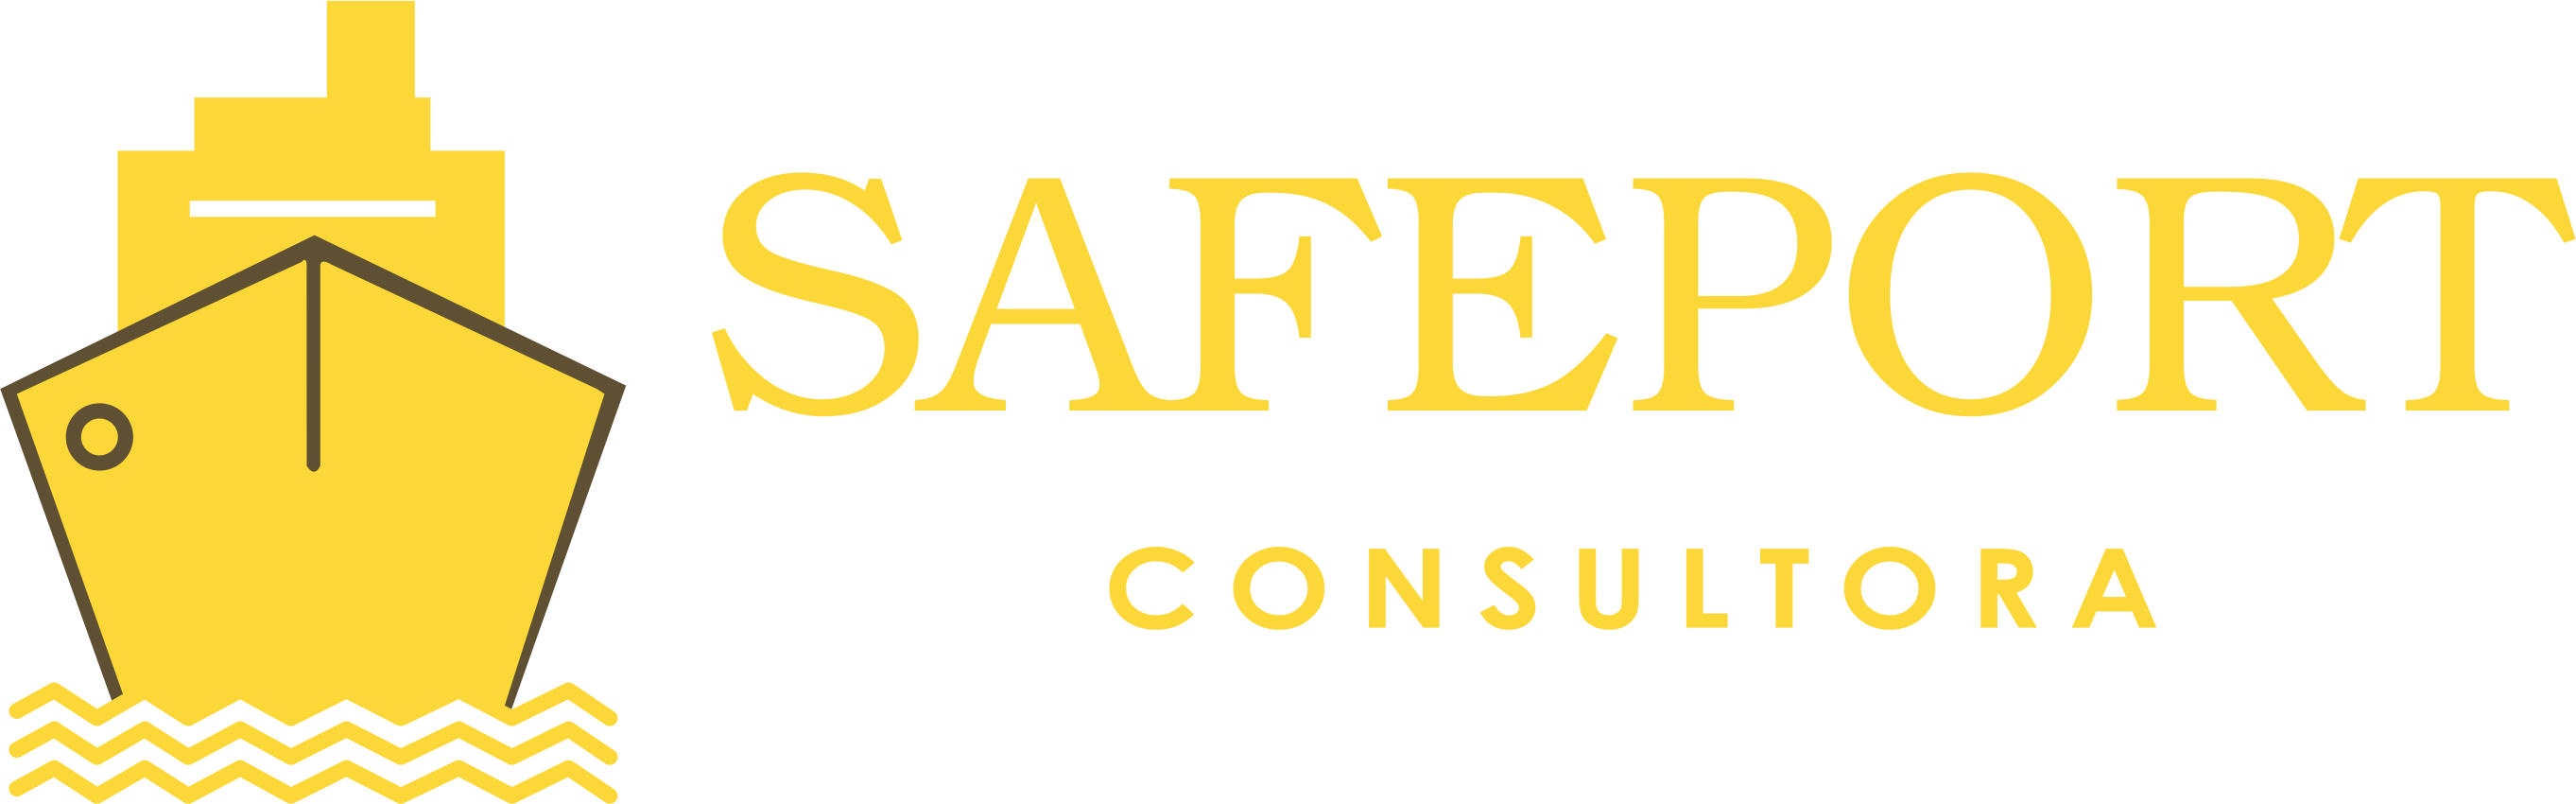 Safeport Consultora